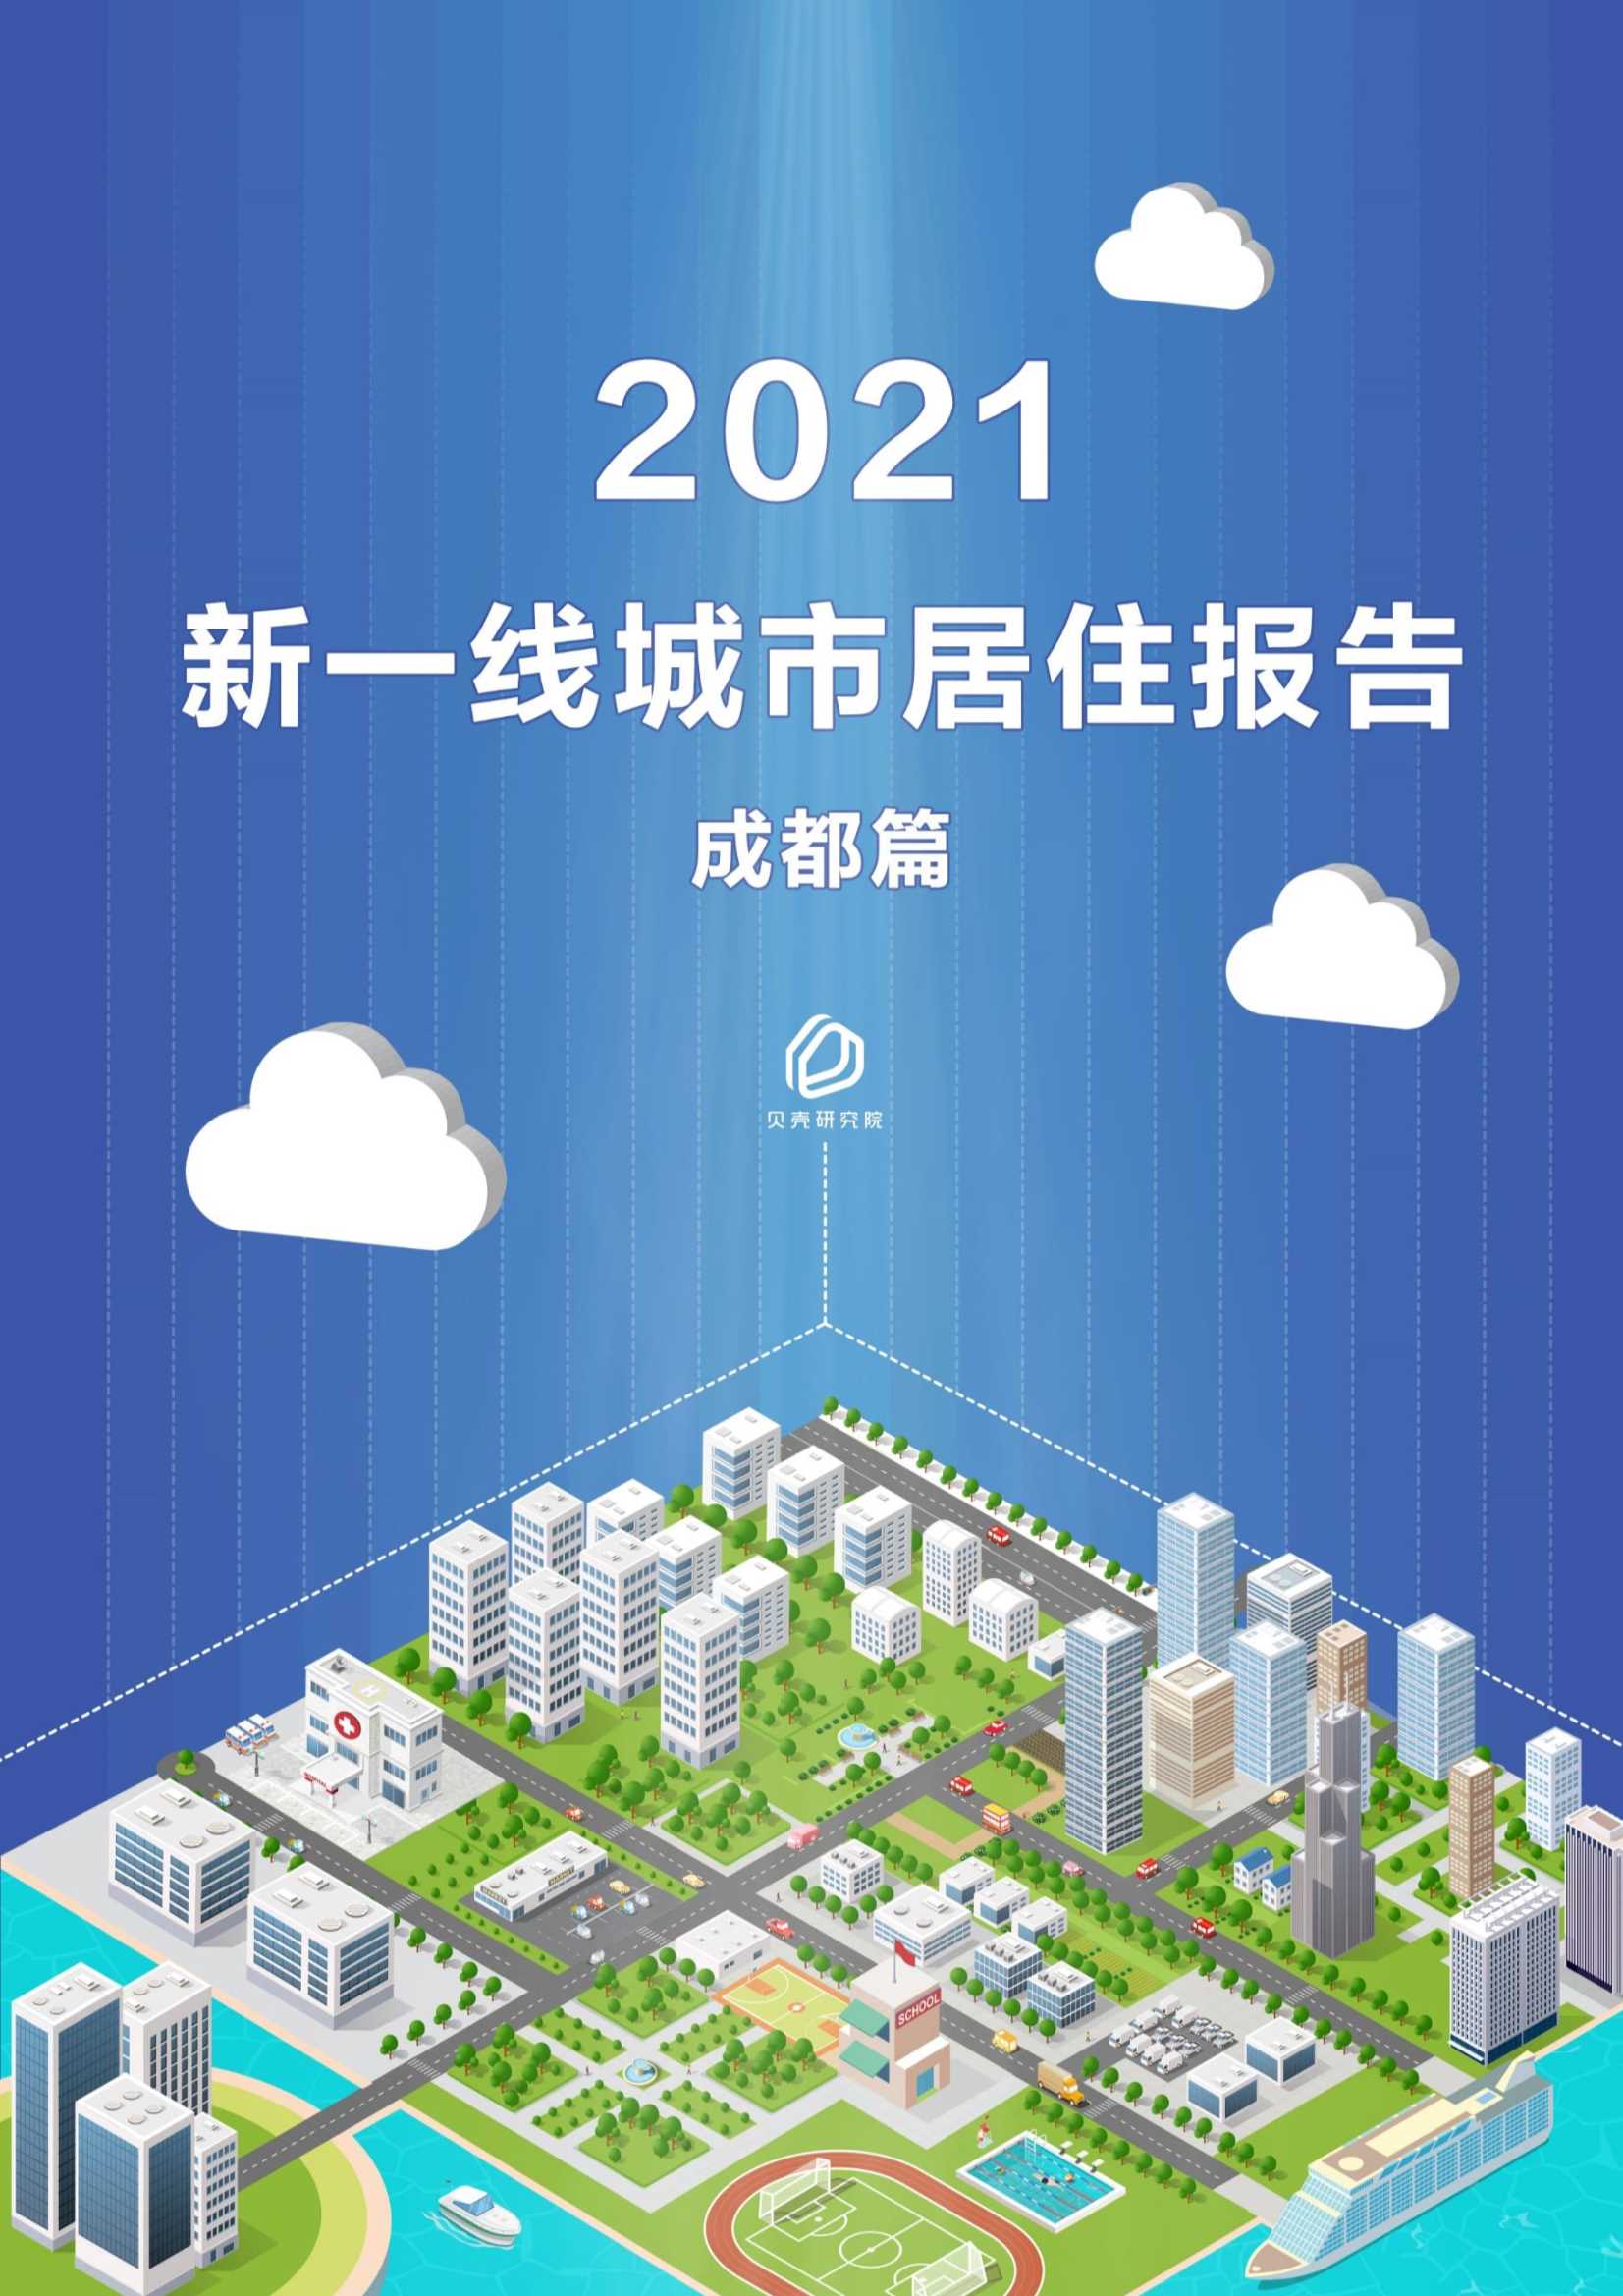 贝壳研究院-新一线城市居住报告成都篇-2021.05-34页